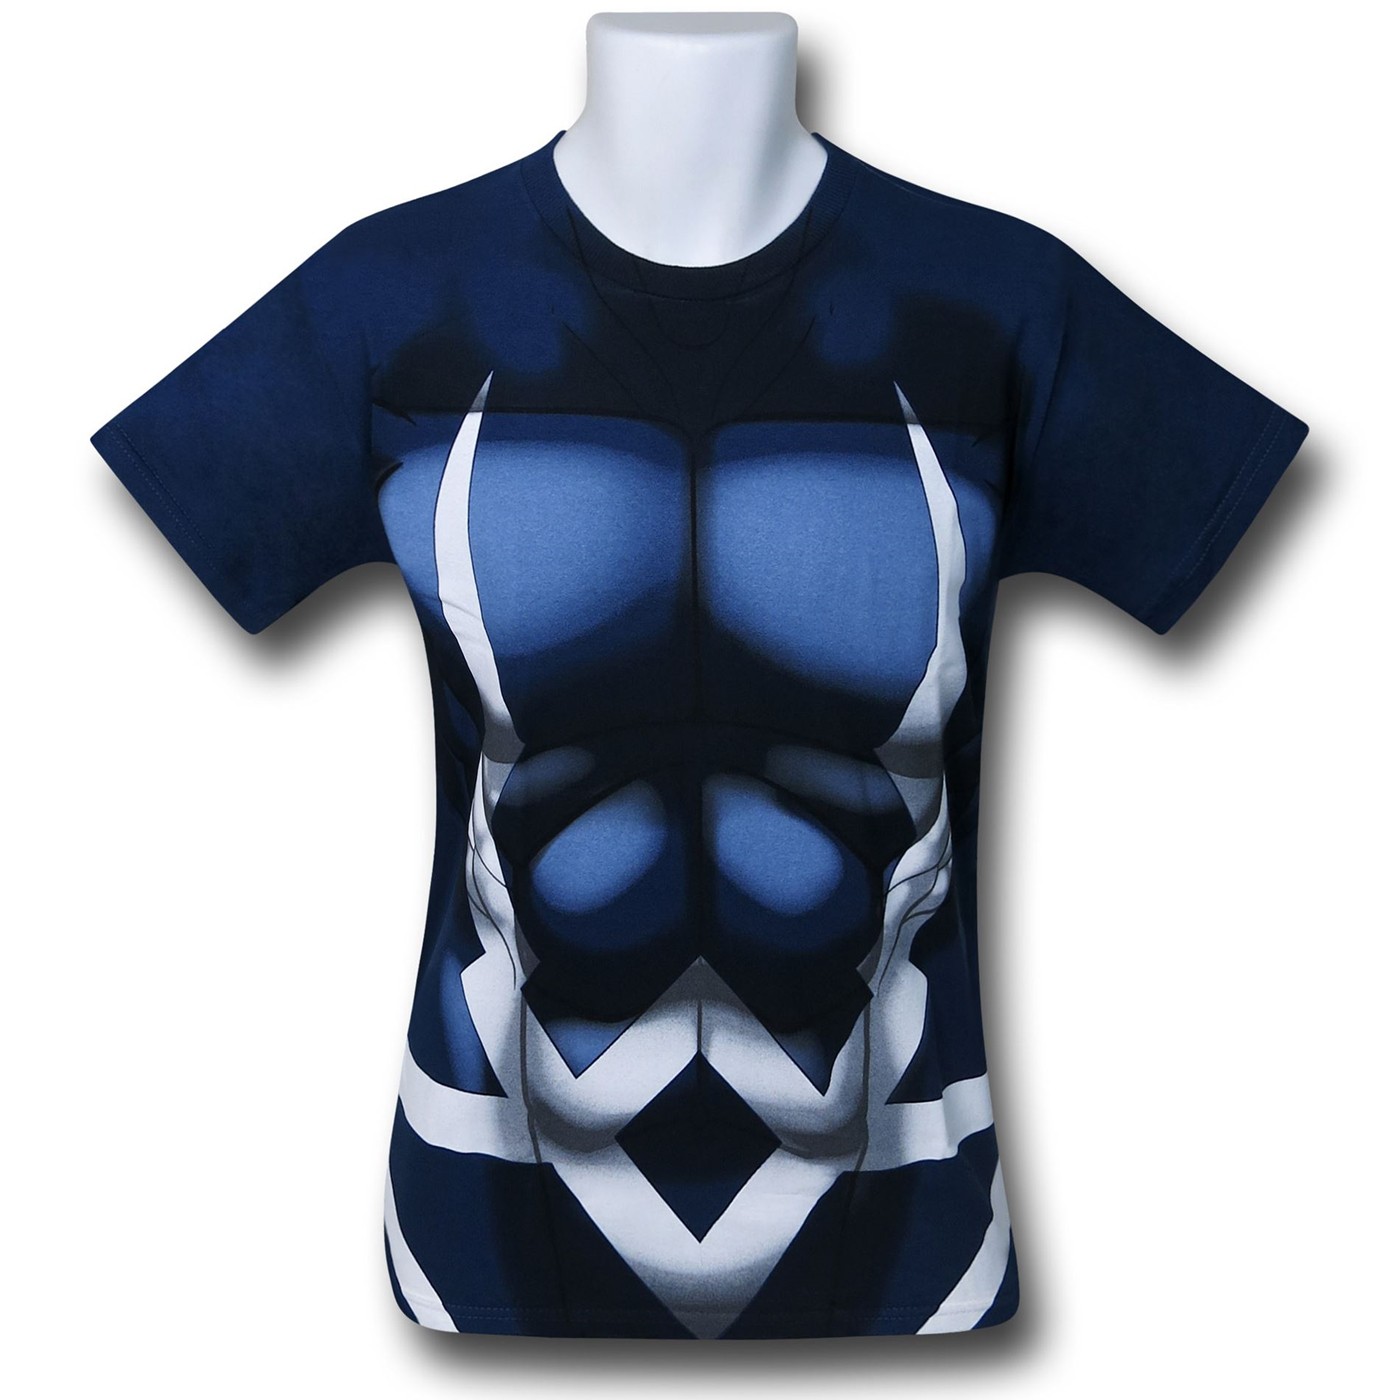 Black Bolt 30 Single Costume T-Shirt